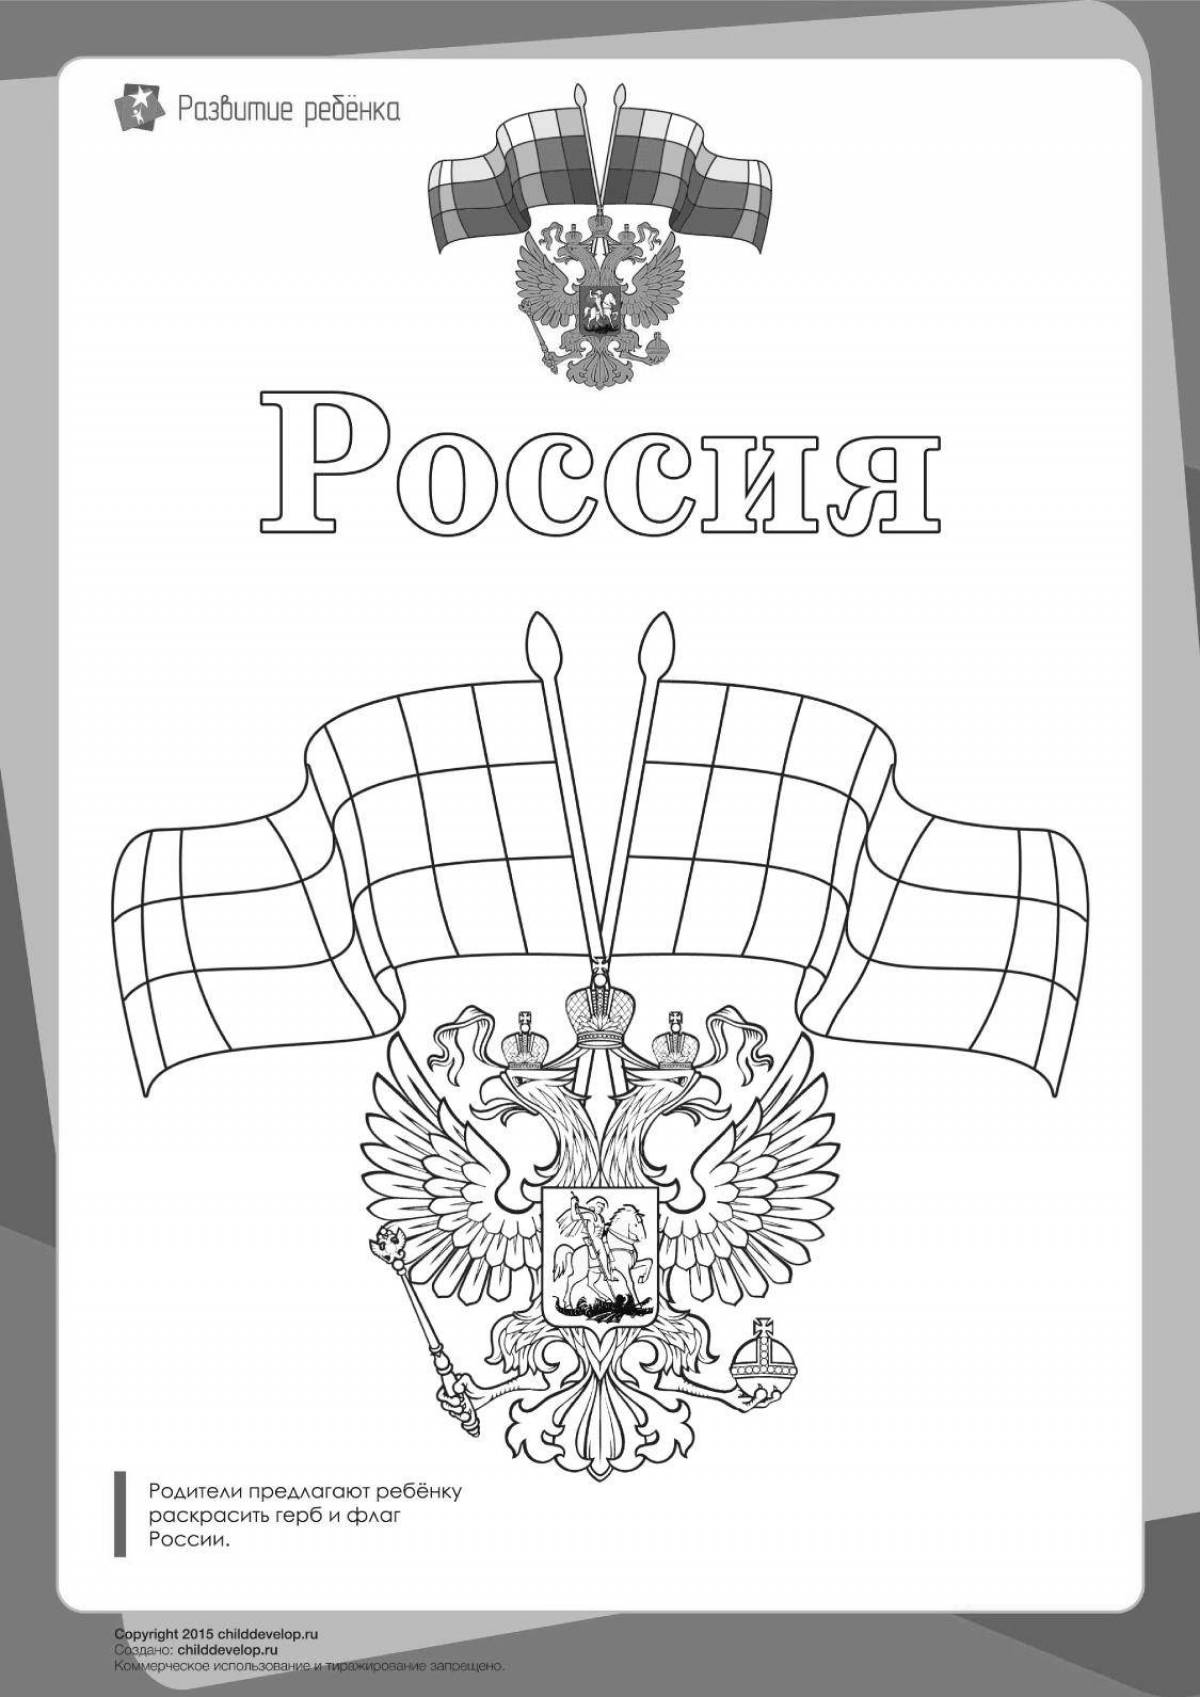 Живой герб россии для дошкольников